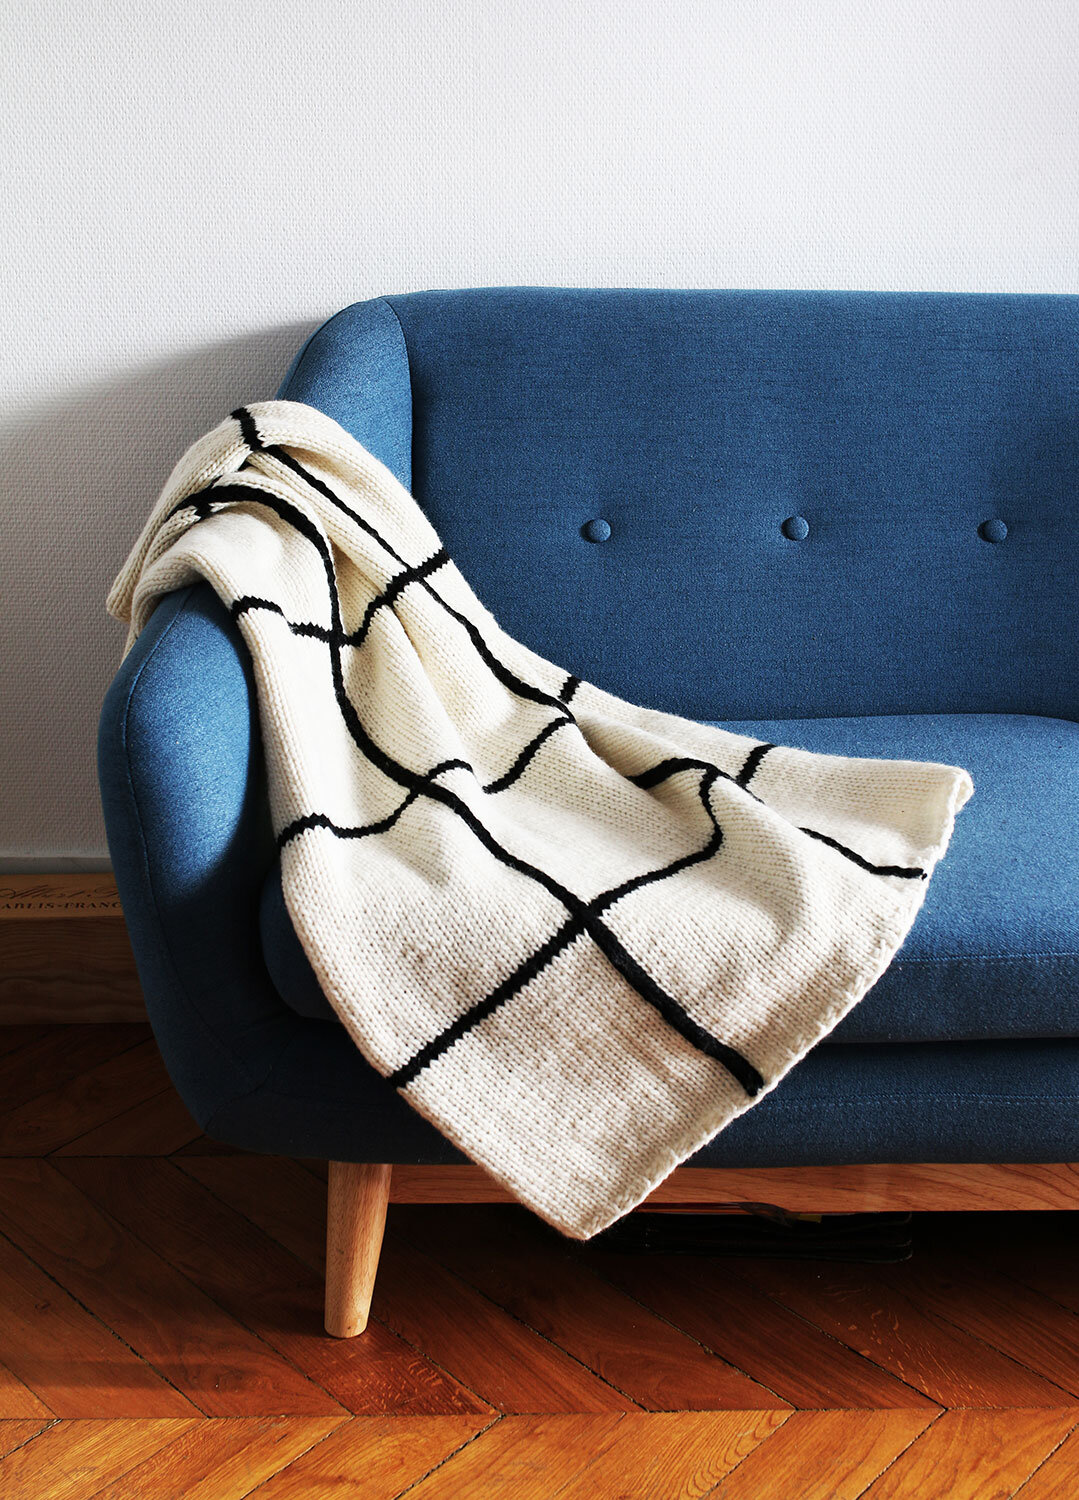 knitting-kit-petite-wool-the-grid-blanket_EN-01.jpeg